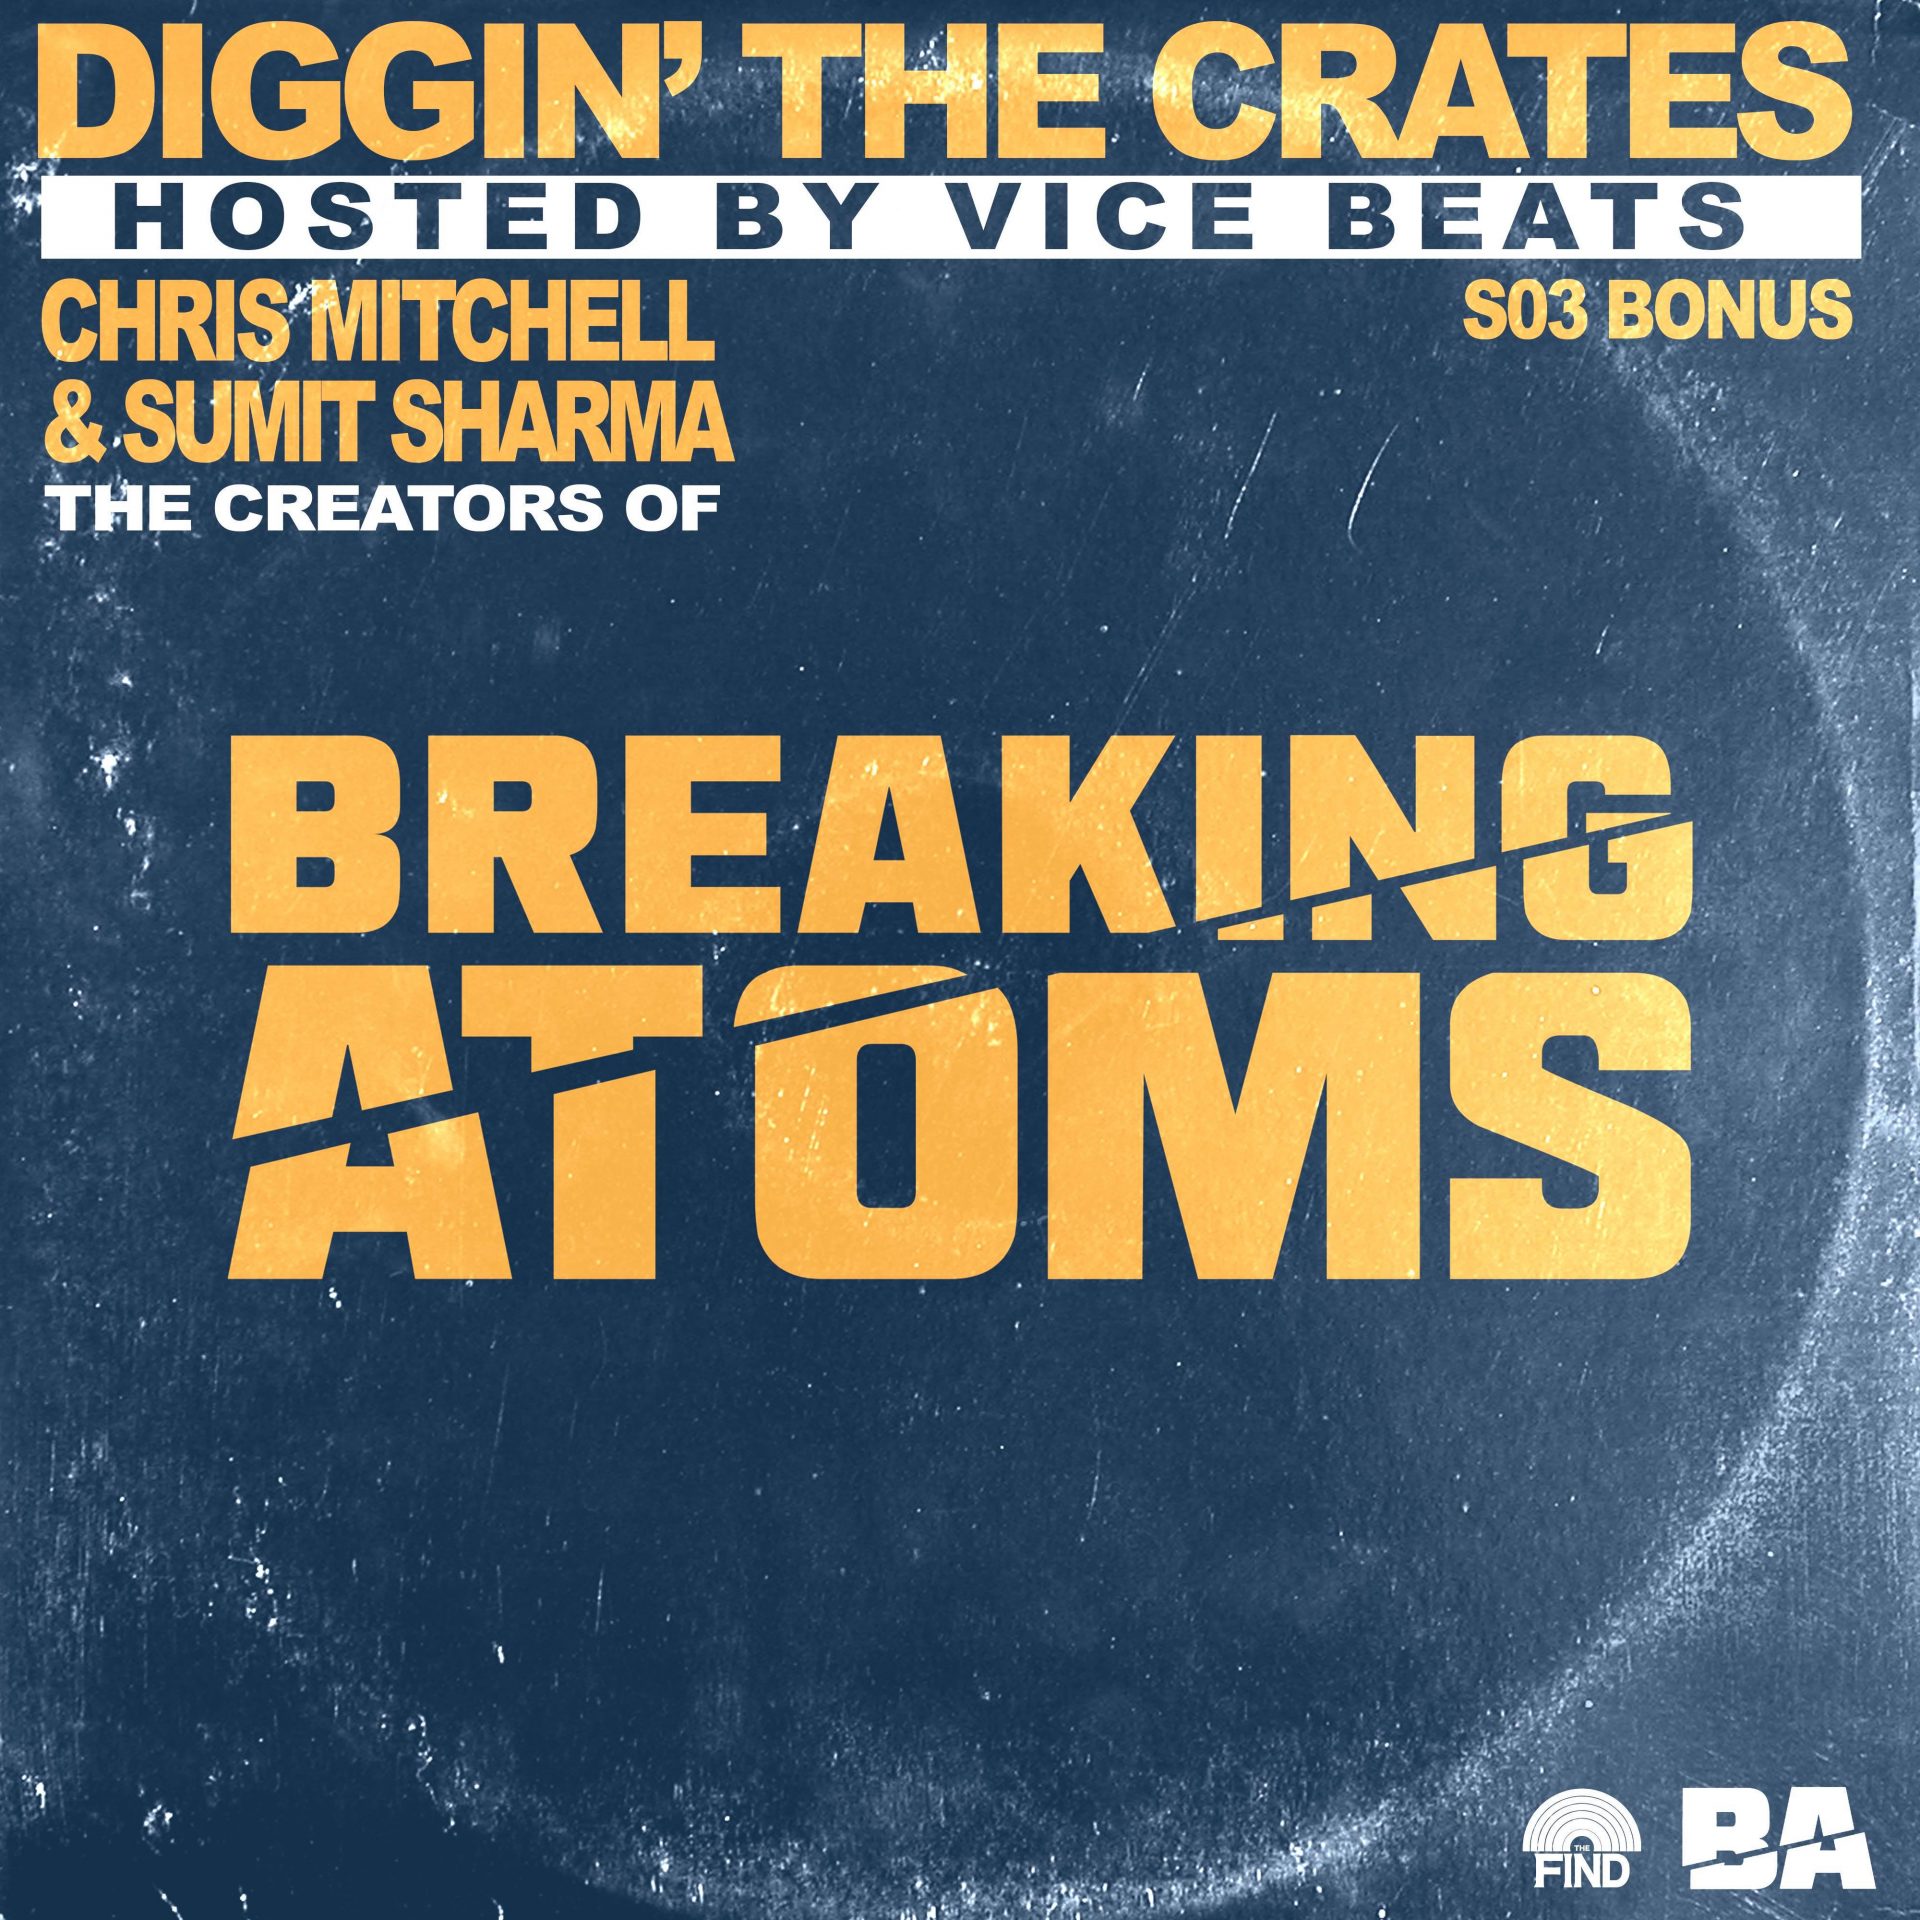 Breaking Atoms (Diggin’ The Crates S3 Bonus Episode)